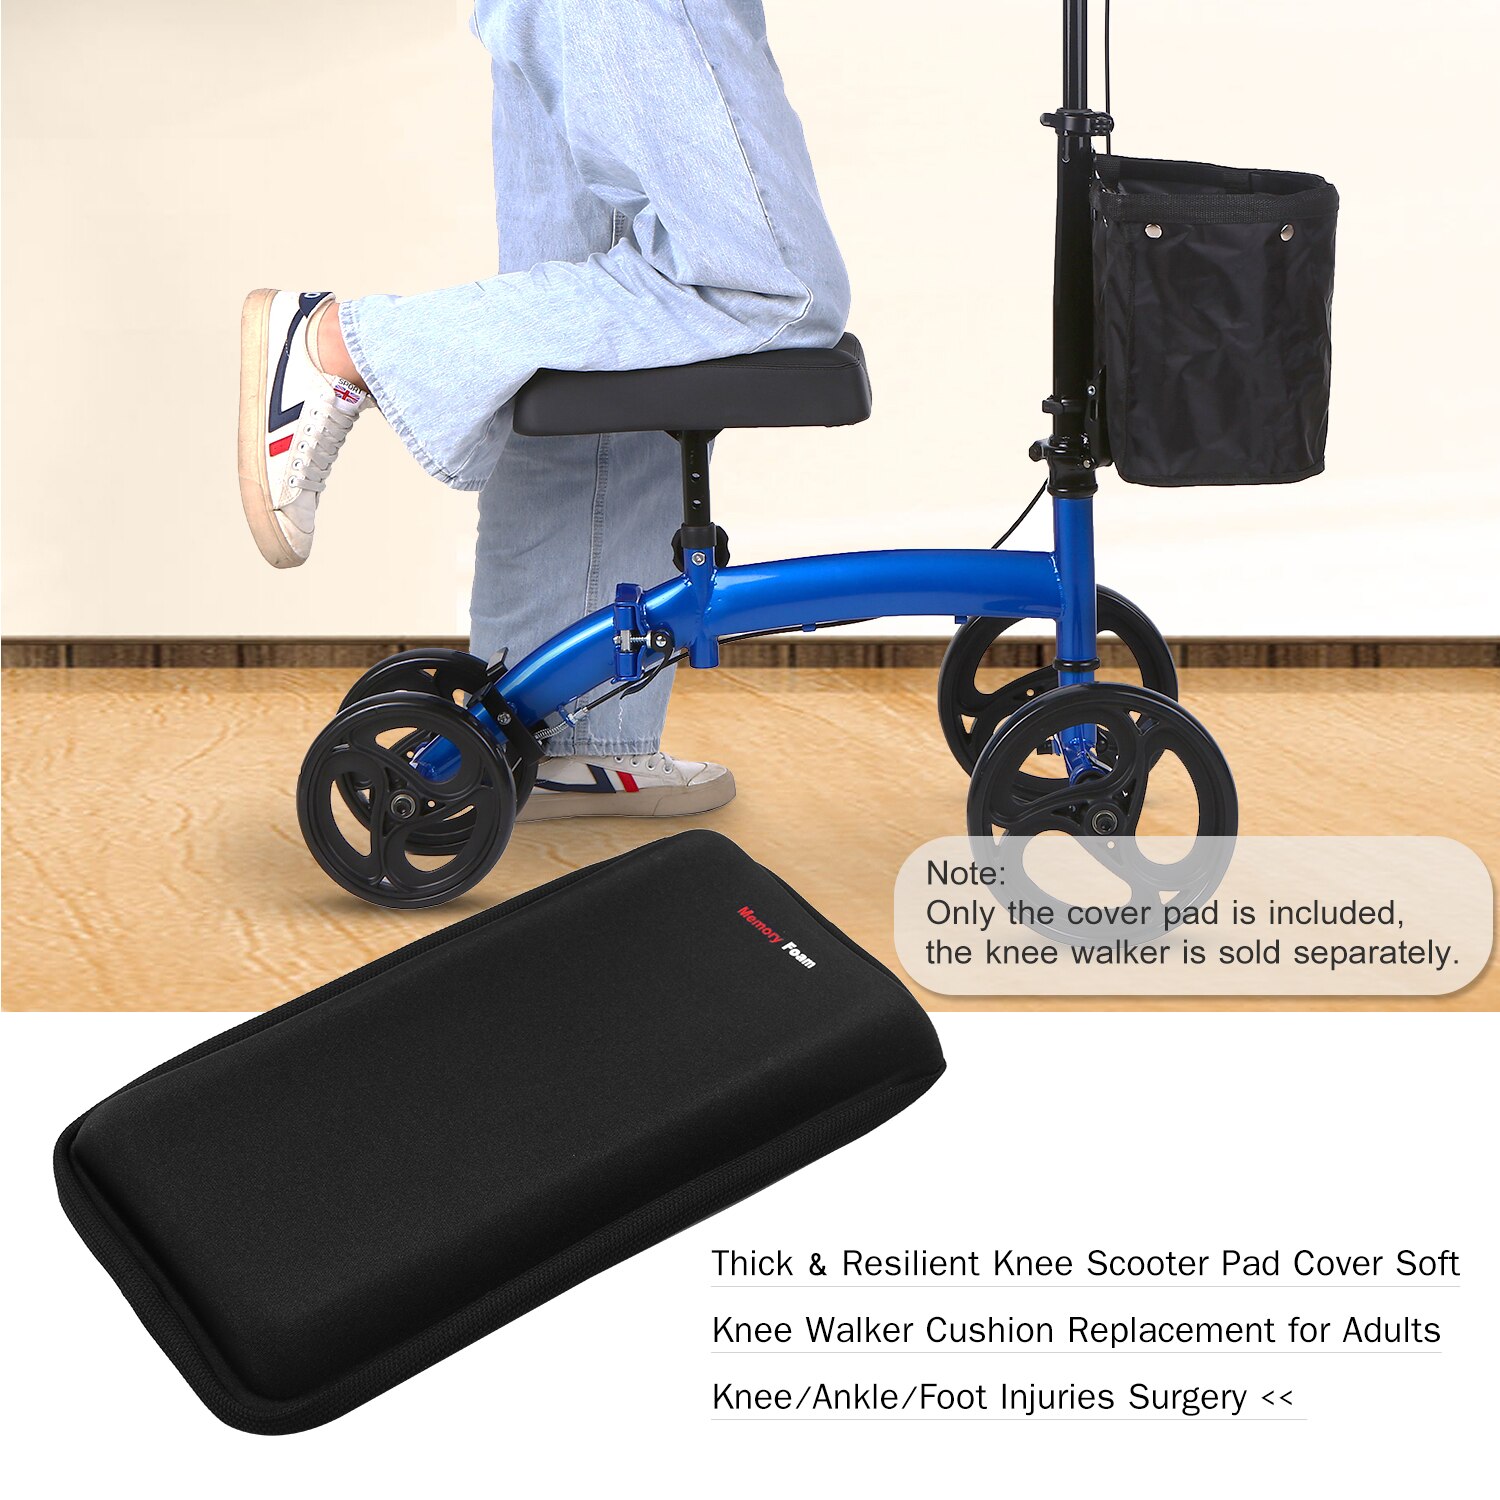 Dæksel blød knælængerpude udskiftning tyk og modstandsdygtig knæ scooter pad til voksne knæ/ankel/fod skader kirurgi